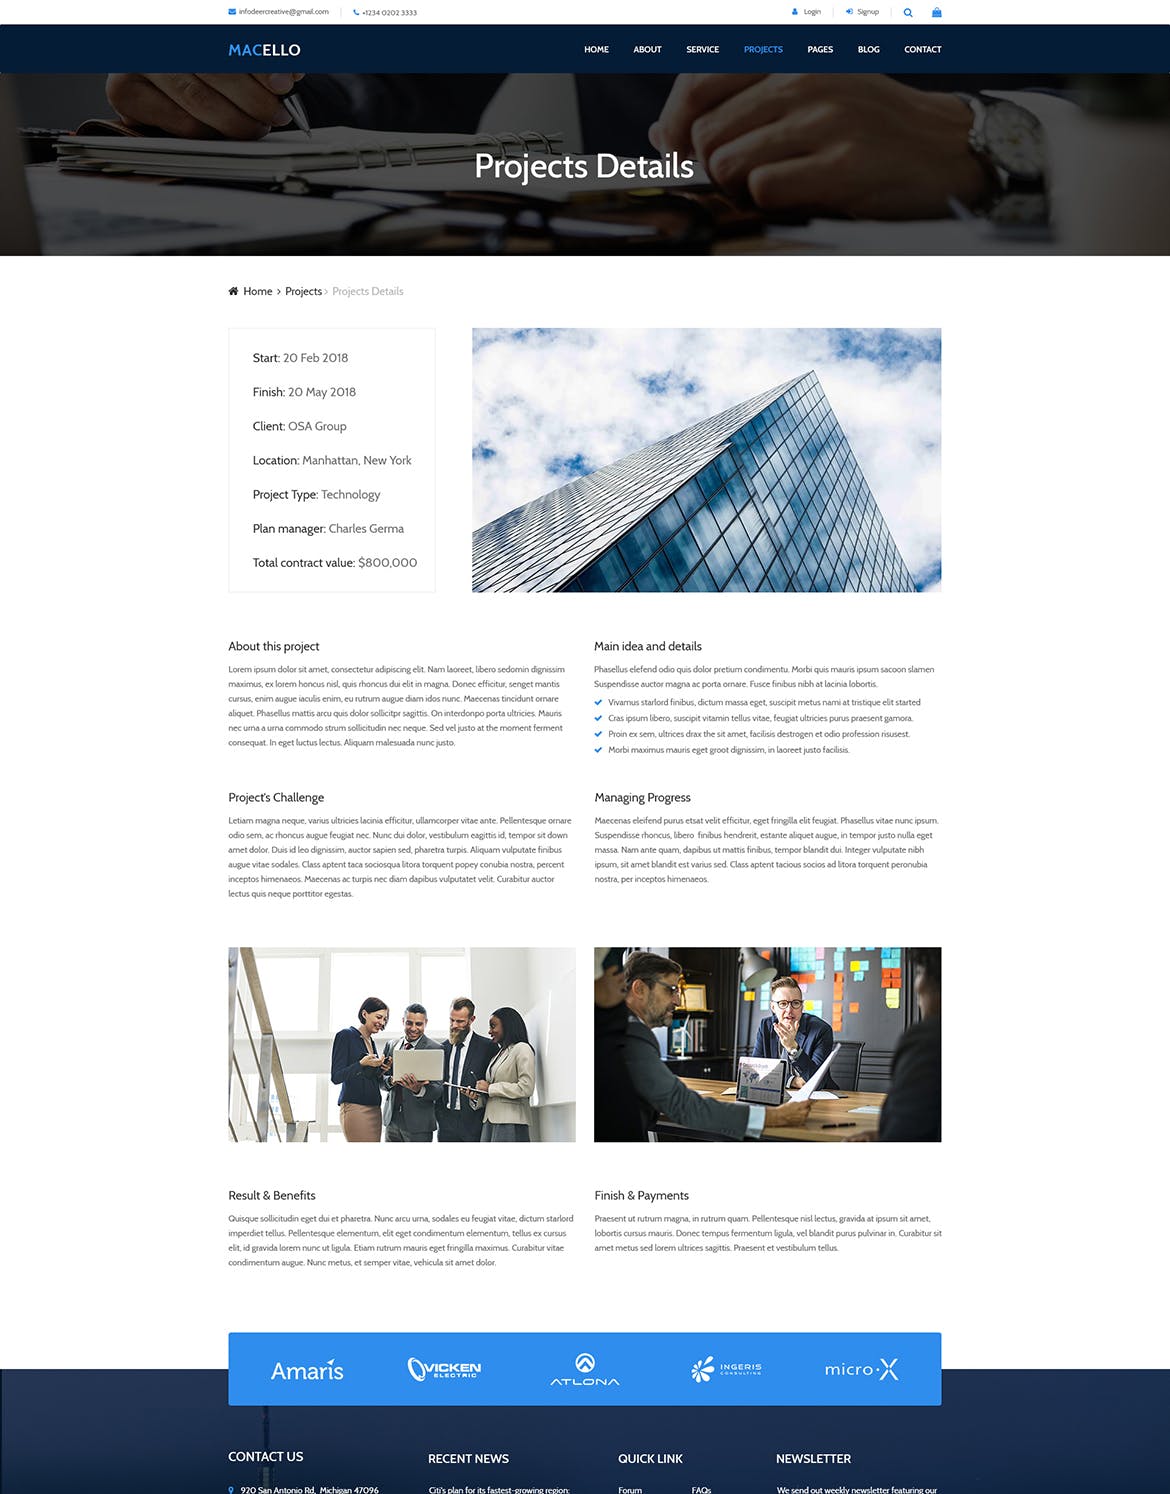 商业网站企业官网设计PSD模板 Macello | Business Psd Template插图(11)